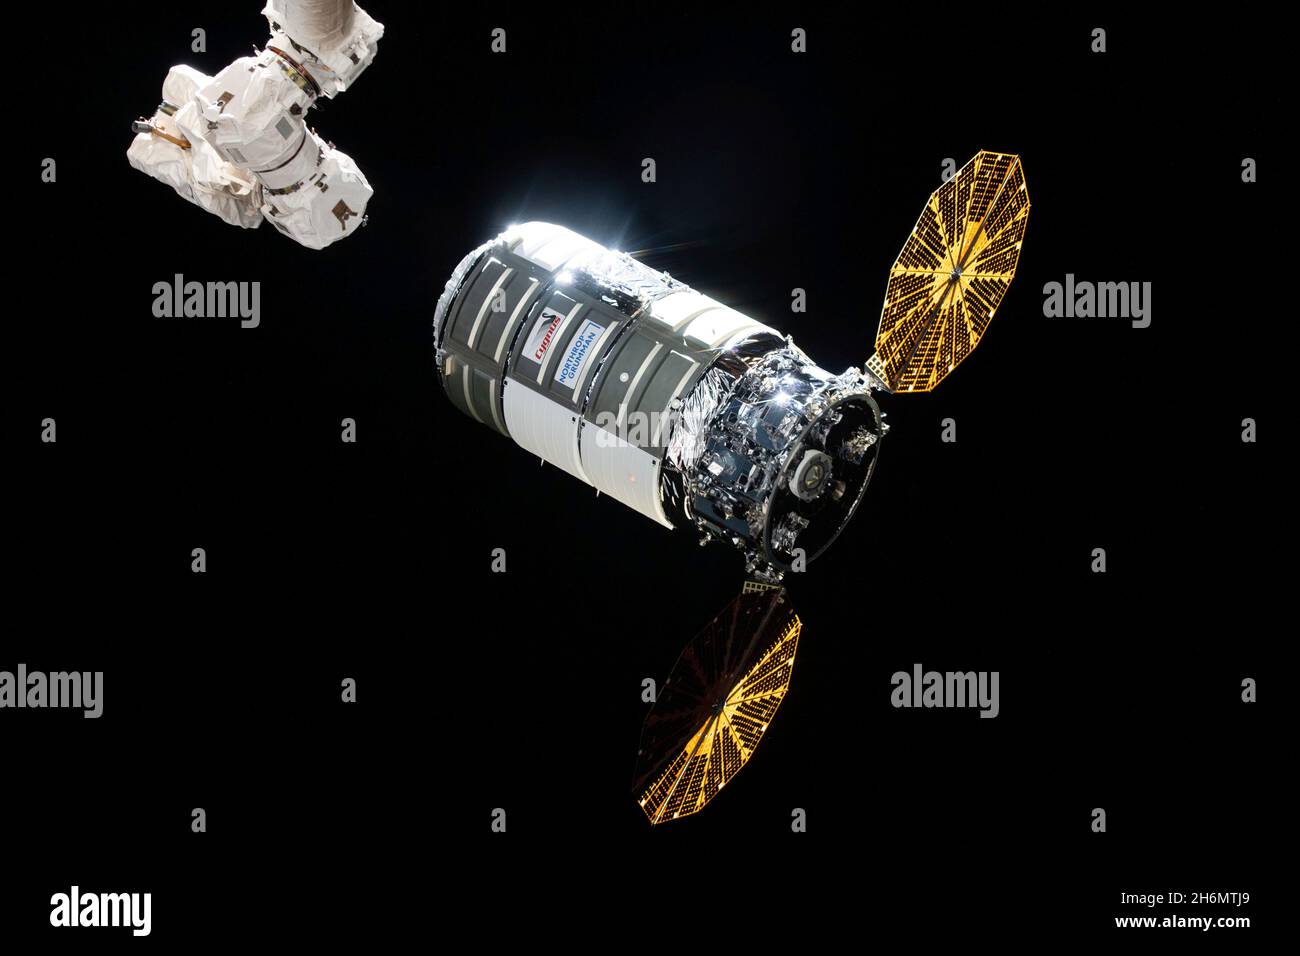 Cygnus arrive à la Station spatiale internationale (ISS) le 12 août 2021 après un lancement deux jours avant une fusée Northrop Grumman Antares du site de vol de NASAs Wallops sur l'île Wallops, en Virginie.Il s'agit de la 16e mission commerciale de services de réapprovisionnement de la companys à la station spatiale de la NASA.Northrop Grumman a nommé l'engin spatial d'après l'astronaute de la NASA Ellison Onizuka, le premier astronaute américain d'Asie.Cygnus sera en orbite le mercredi 15 décembre 2021, à la suite d'un tir de moteur de désorbite pour mettre en place une rentrée destructrice dans laquelle l'engin spatial, rempli de déchets de la station spatiale cre Banque D'Images